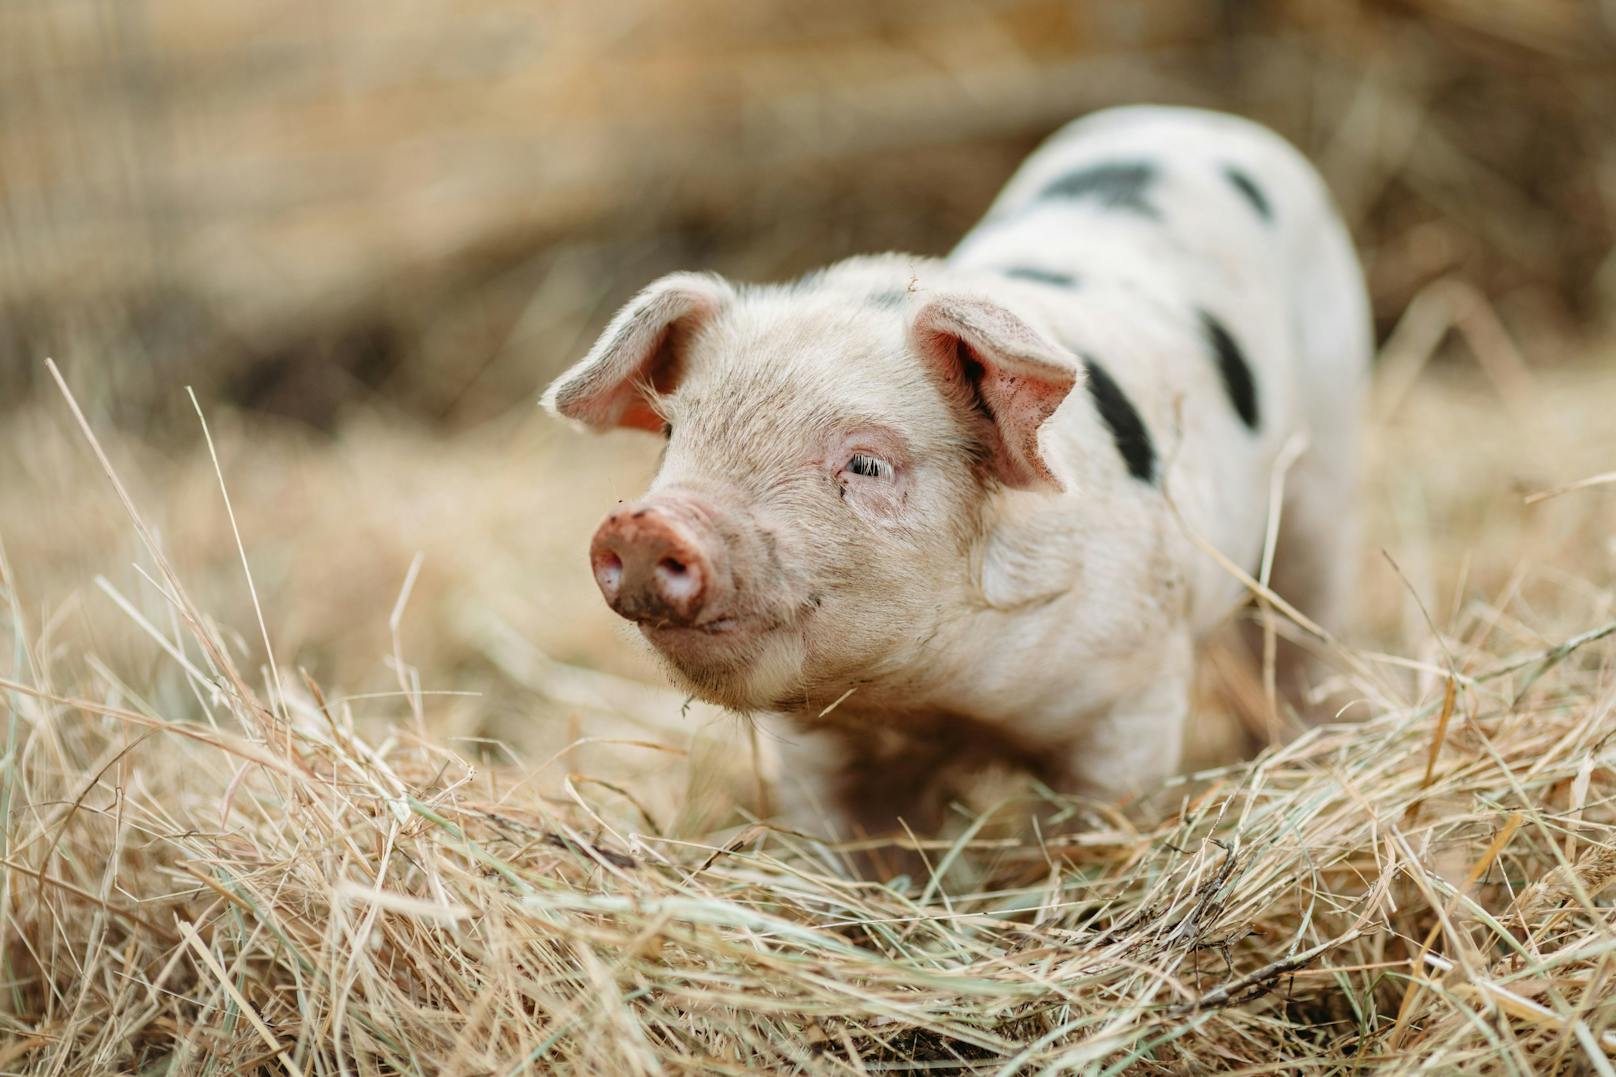 Das AMA-Gütesiegel wird im Bereich Schweinefleisch mit höheren gesetzlichen Standards aufgewertet.